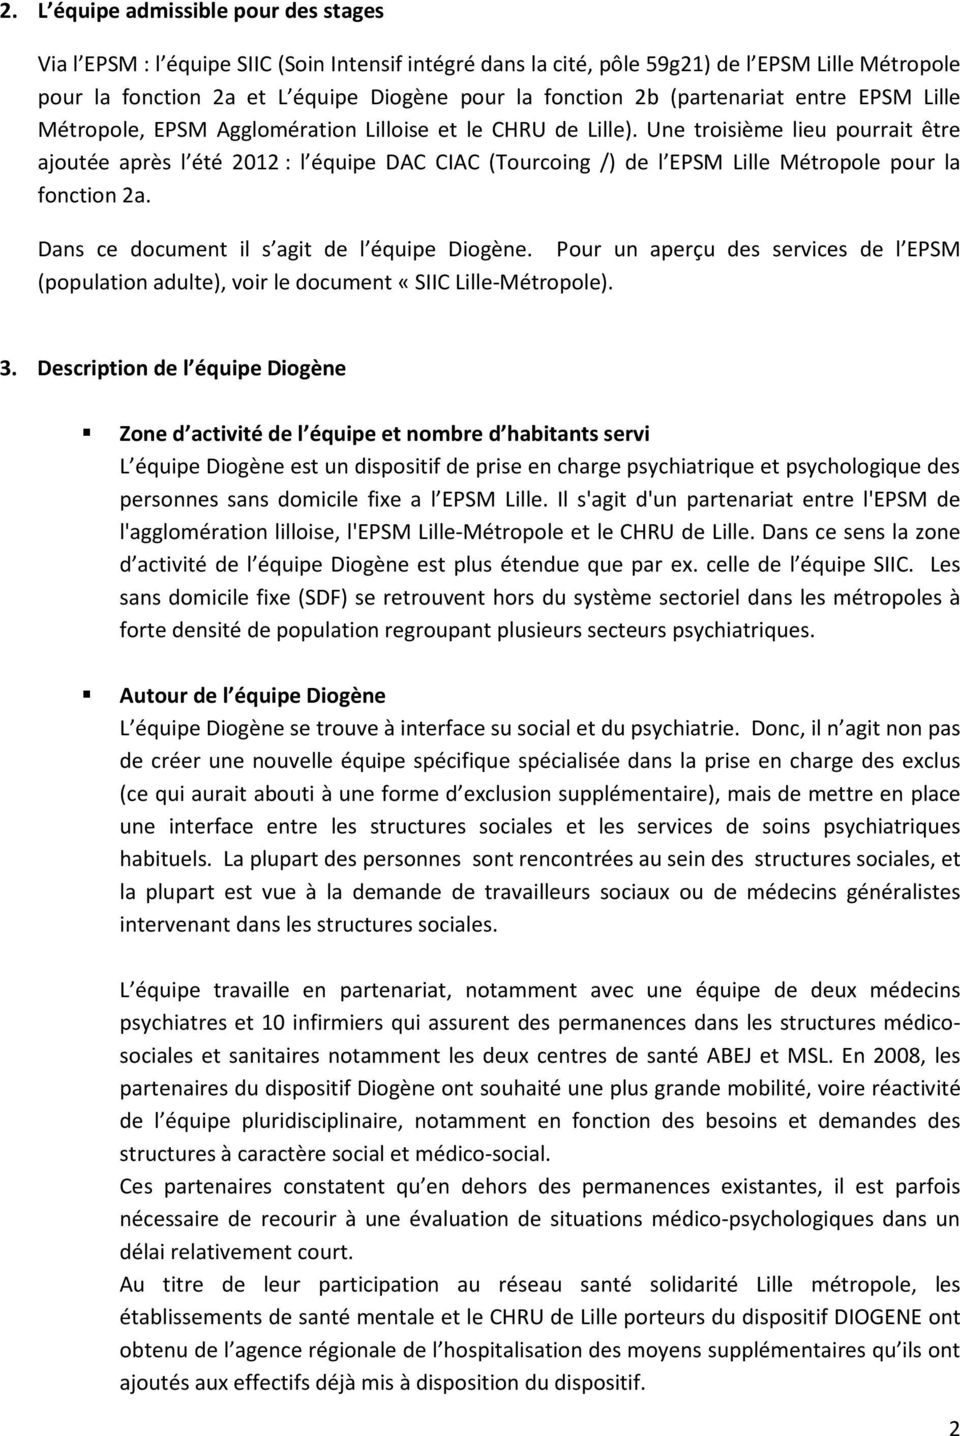 Une troisième lieu pourrait être ajoutée après l été 2012 : l équipe DAC CIAC (Tourcoing /) de l EPSM Lille Métropole pour la fonction 2a. Dans ce document il s agit de l équipe Diogène.